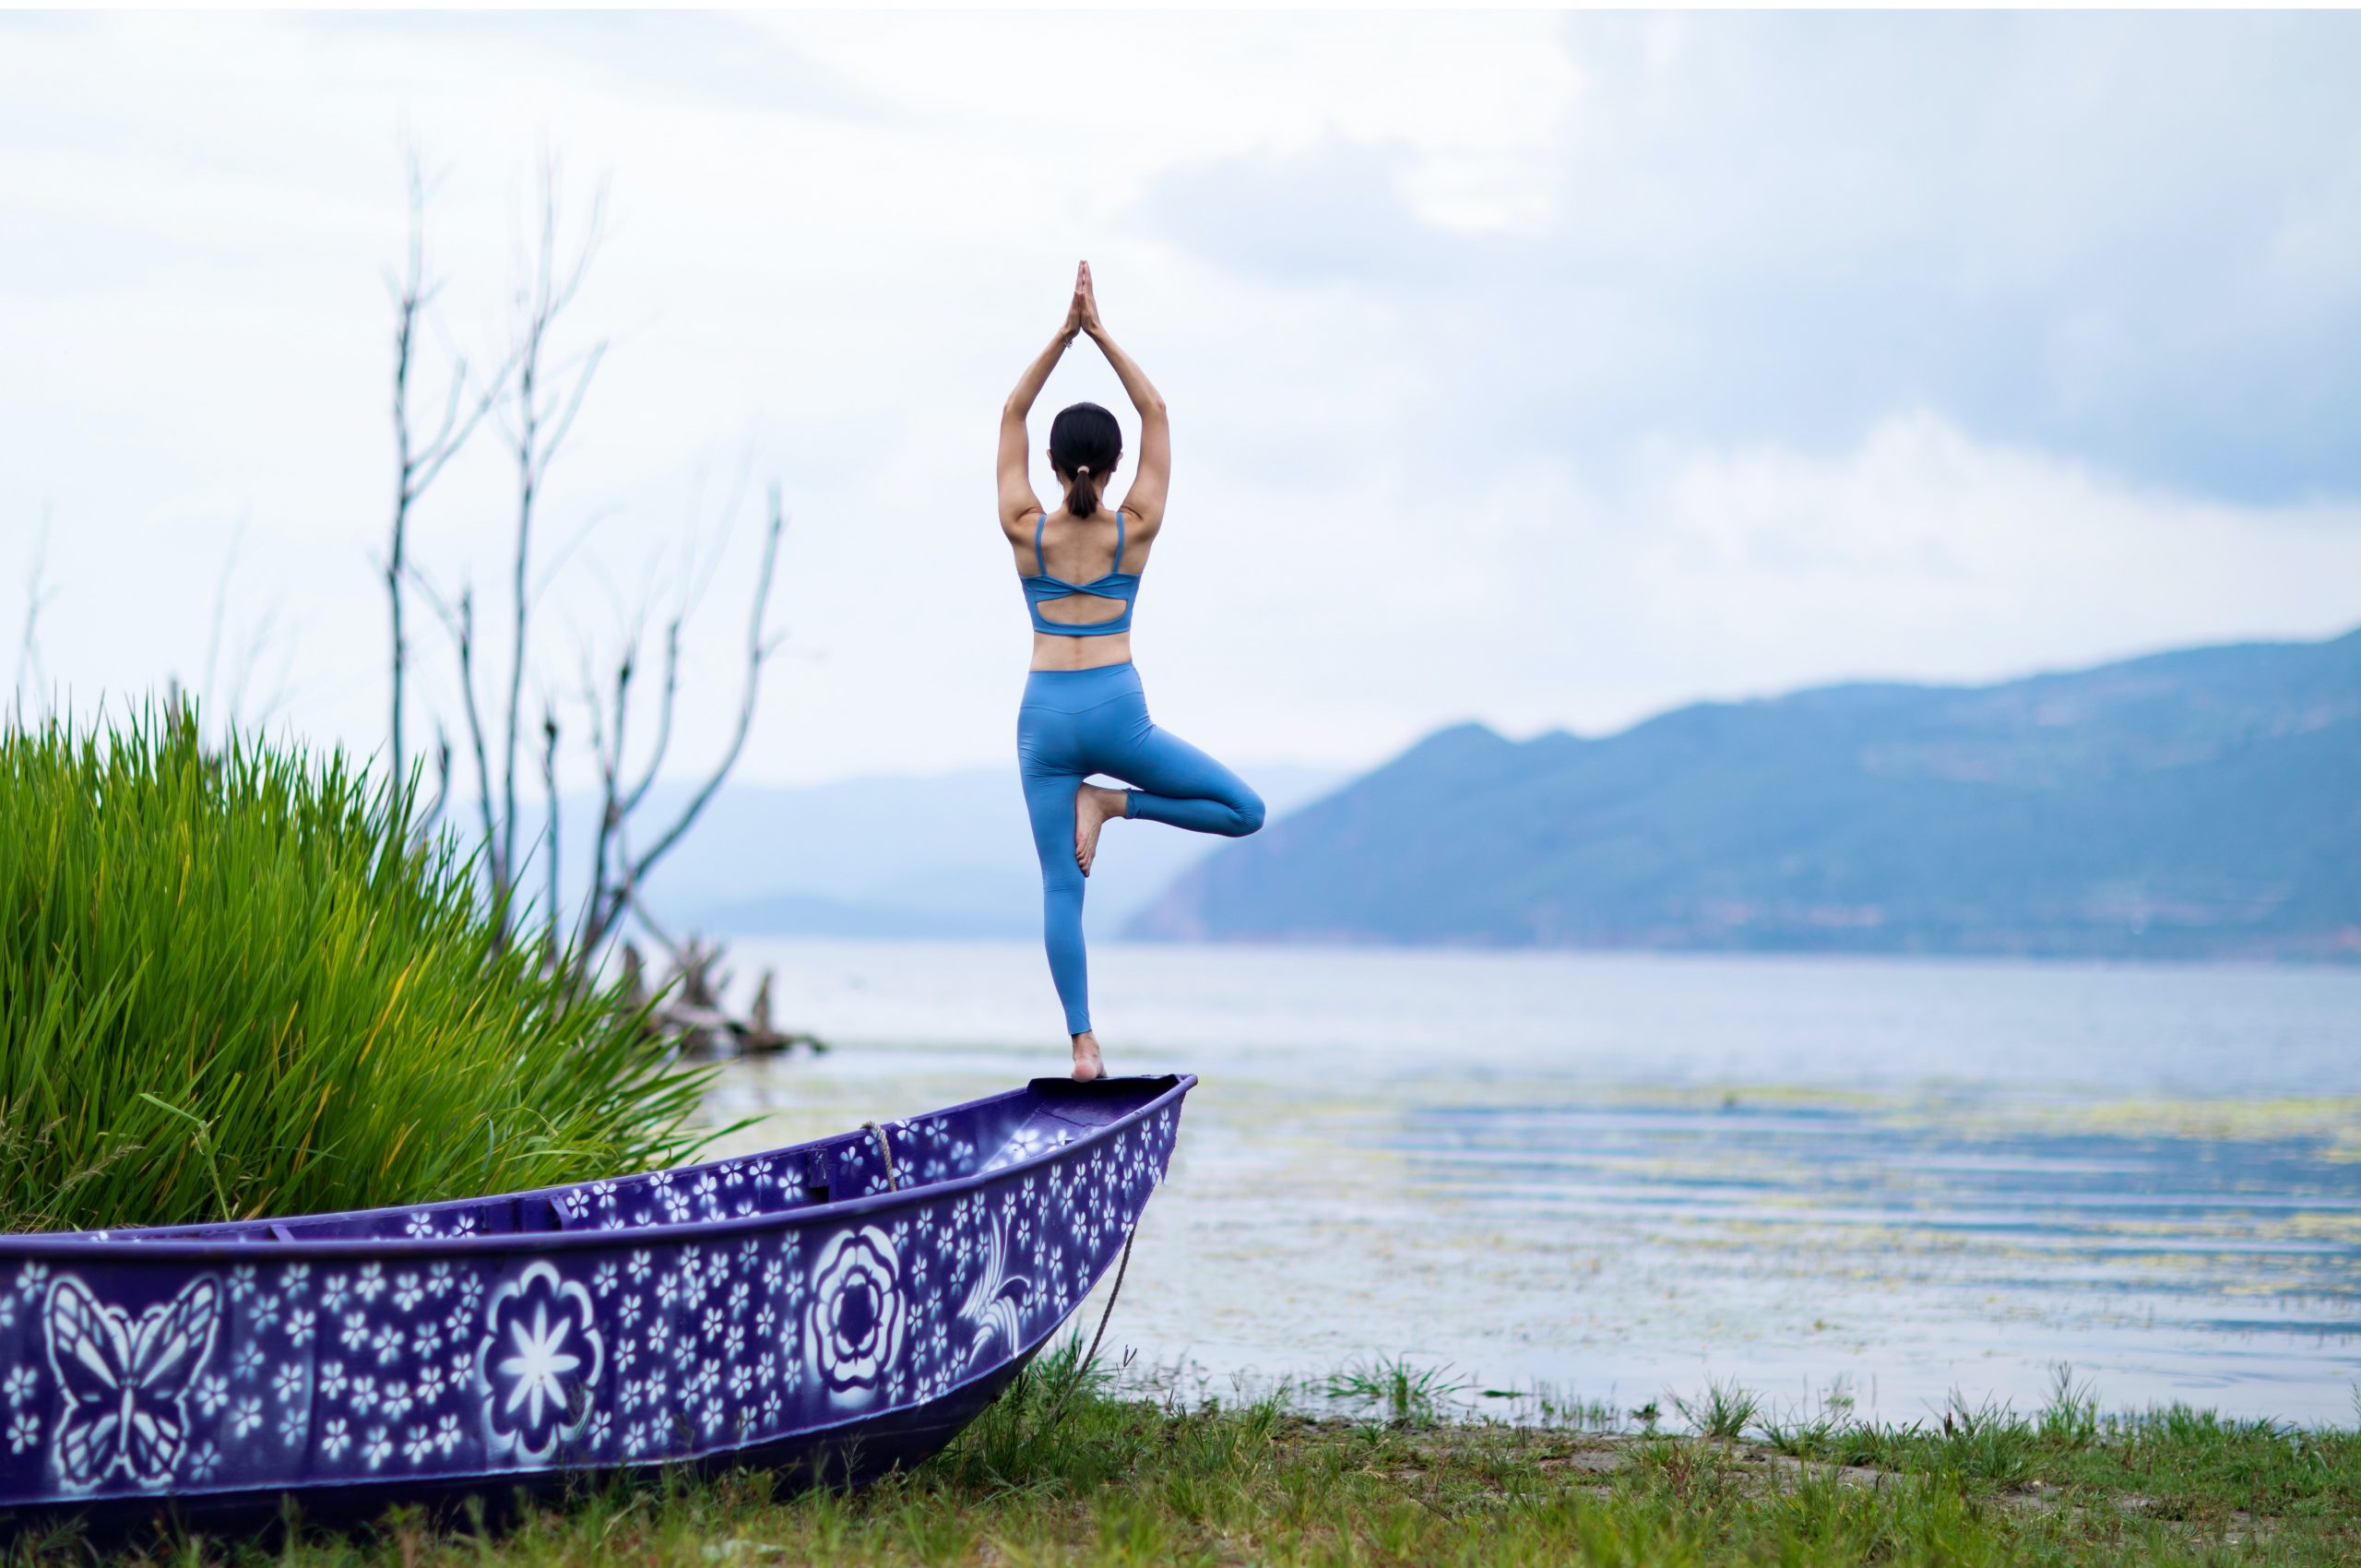 ženska v joga pozi na robu čolna, pred jezerom